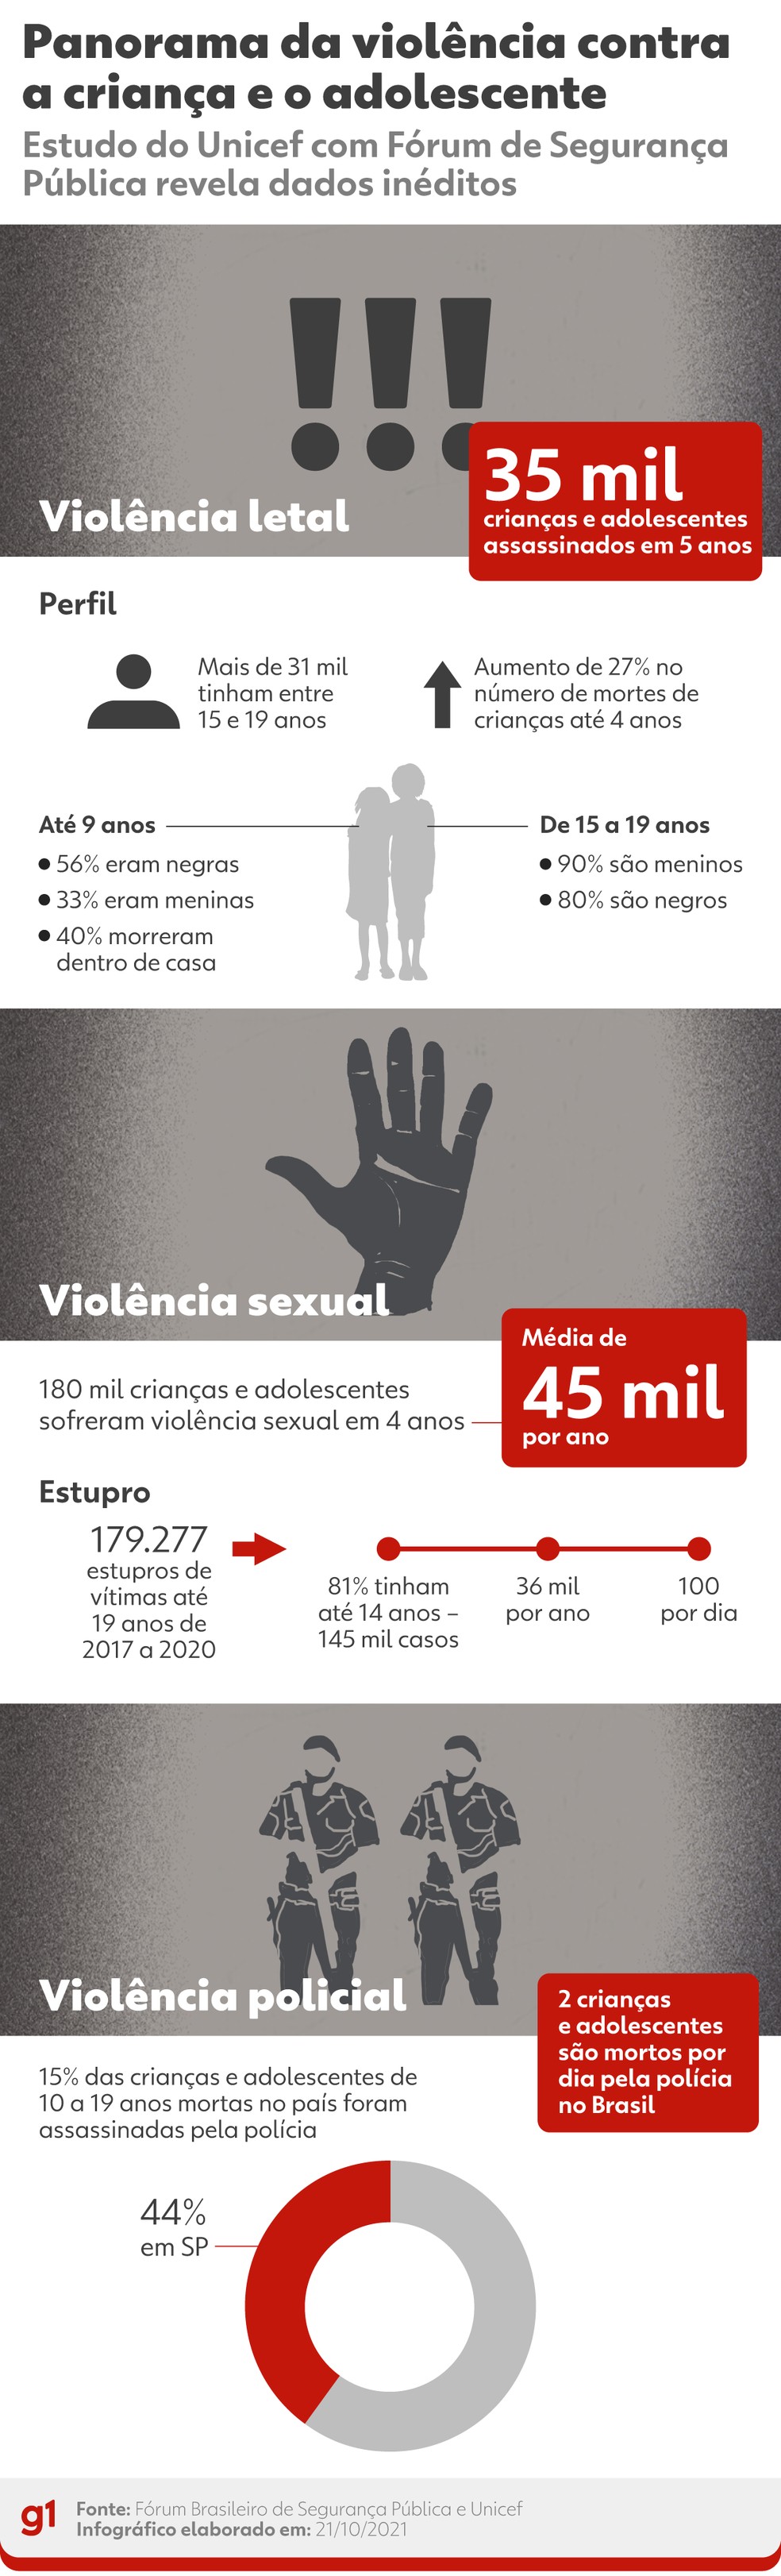 Principais pontos do Panorama da violncia letal e sexual contra crianas e adolescentes no Brasil — Foto: Arte/g1